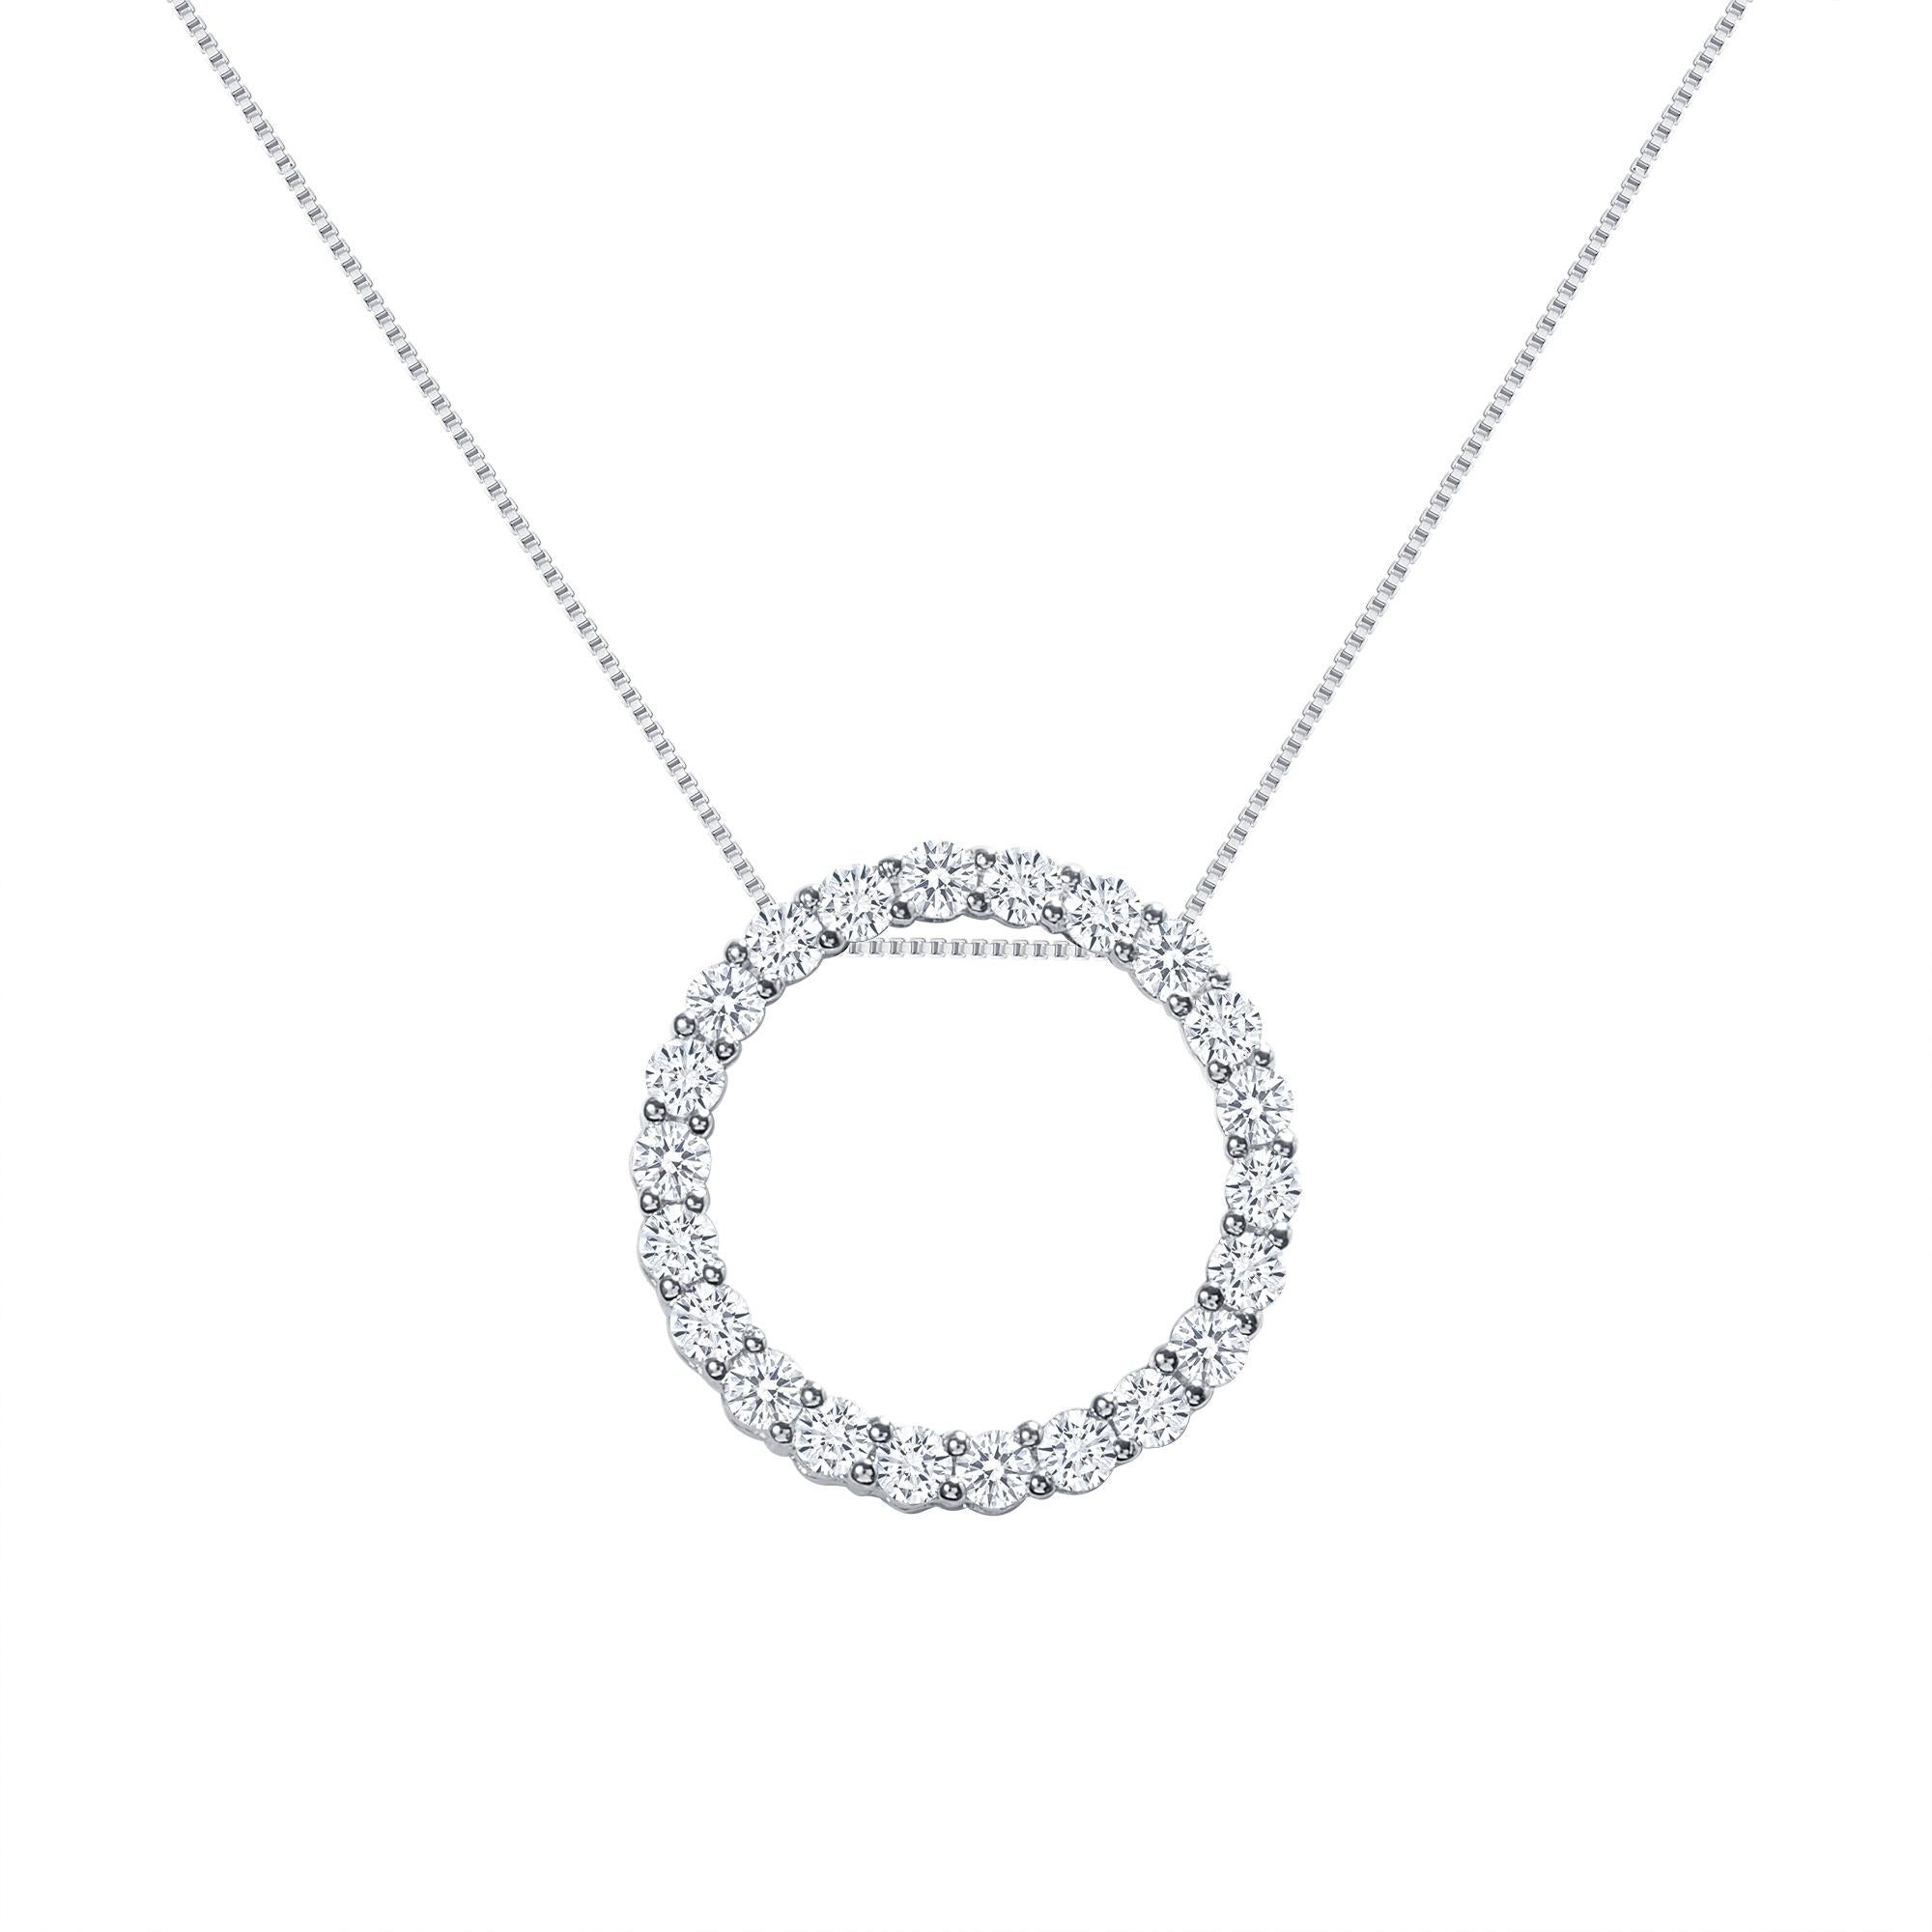 Ce pendentif en forme de cercle de diamants offre un look chic et lumineux.
Métal : Or 14k
Total des carats du diamant : 1 carat
Taille du diamant : Diamants naturels ronds (non reproduits en laboratoire)
Clarté du diamant : VS
Couleur du diamant :